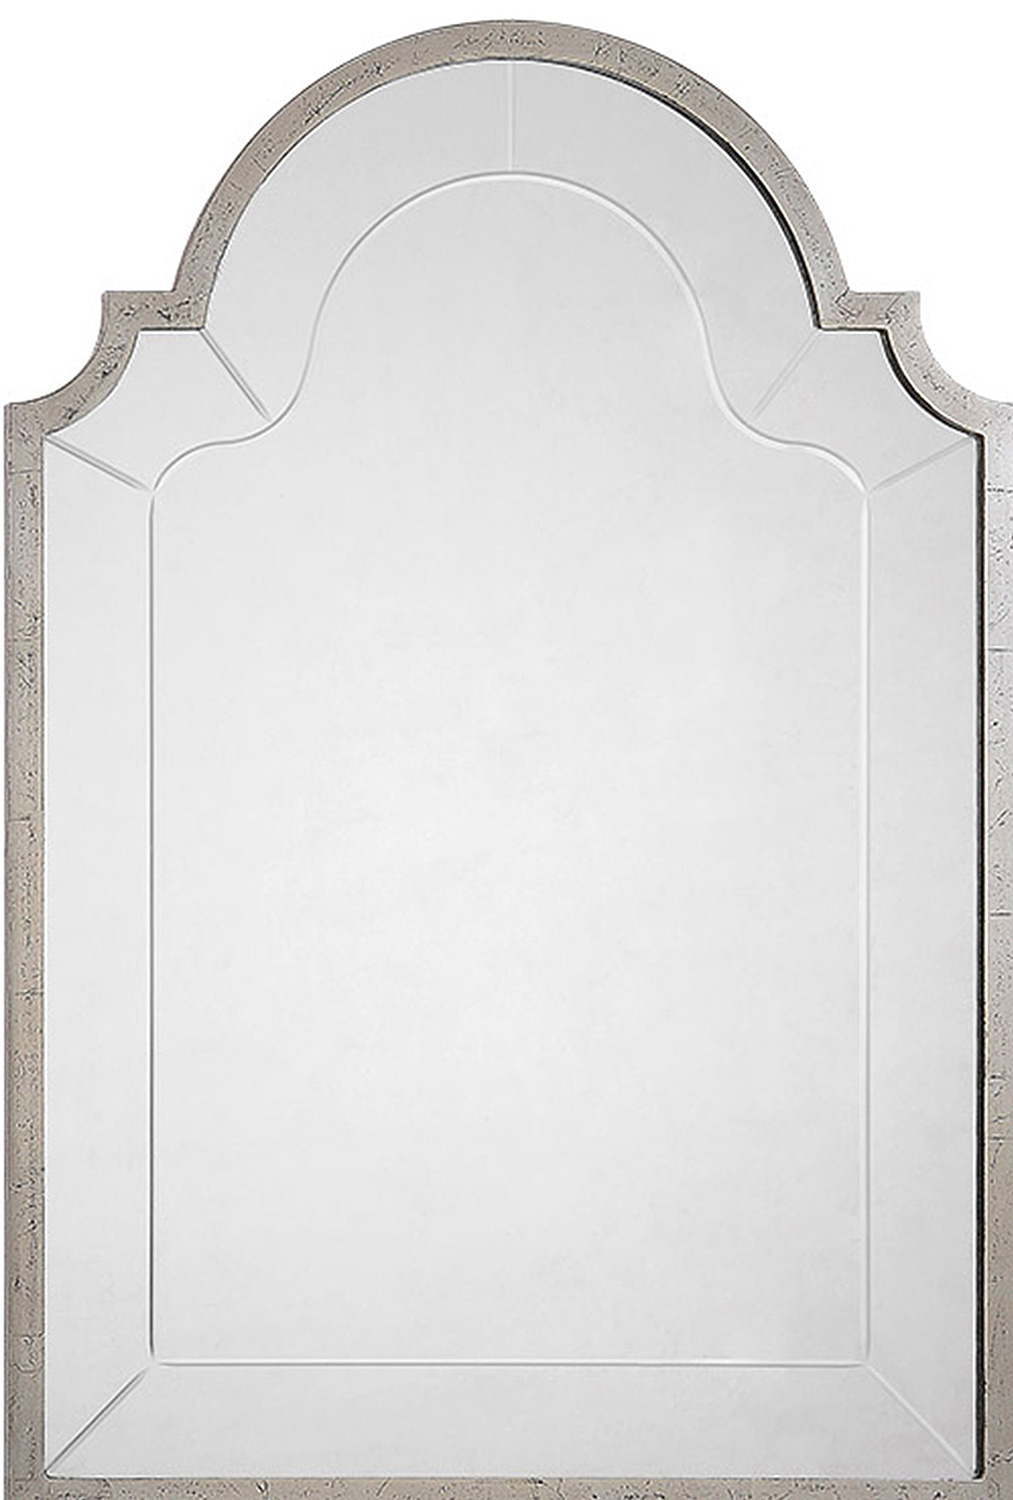 Ren-Wil Atley Vertical Mirror